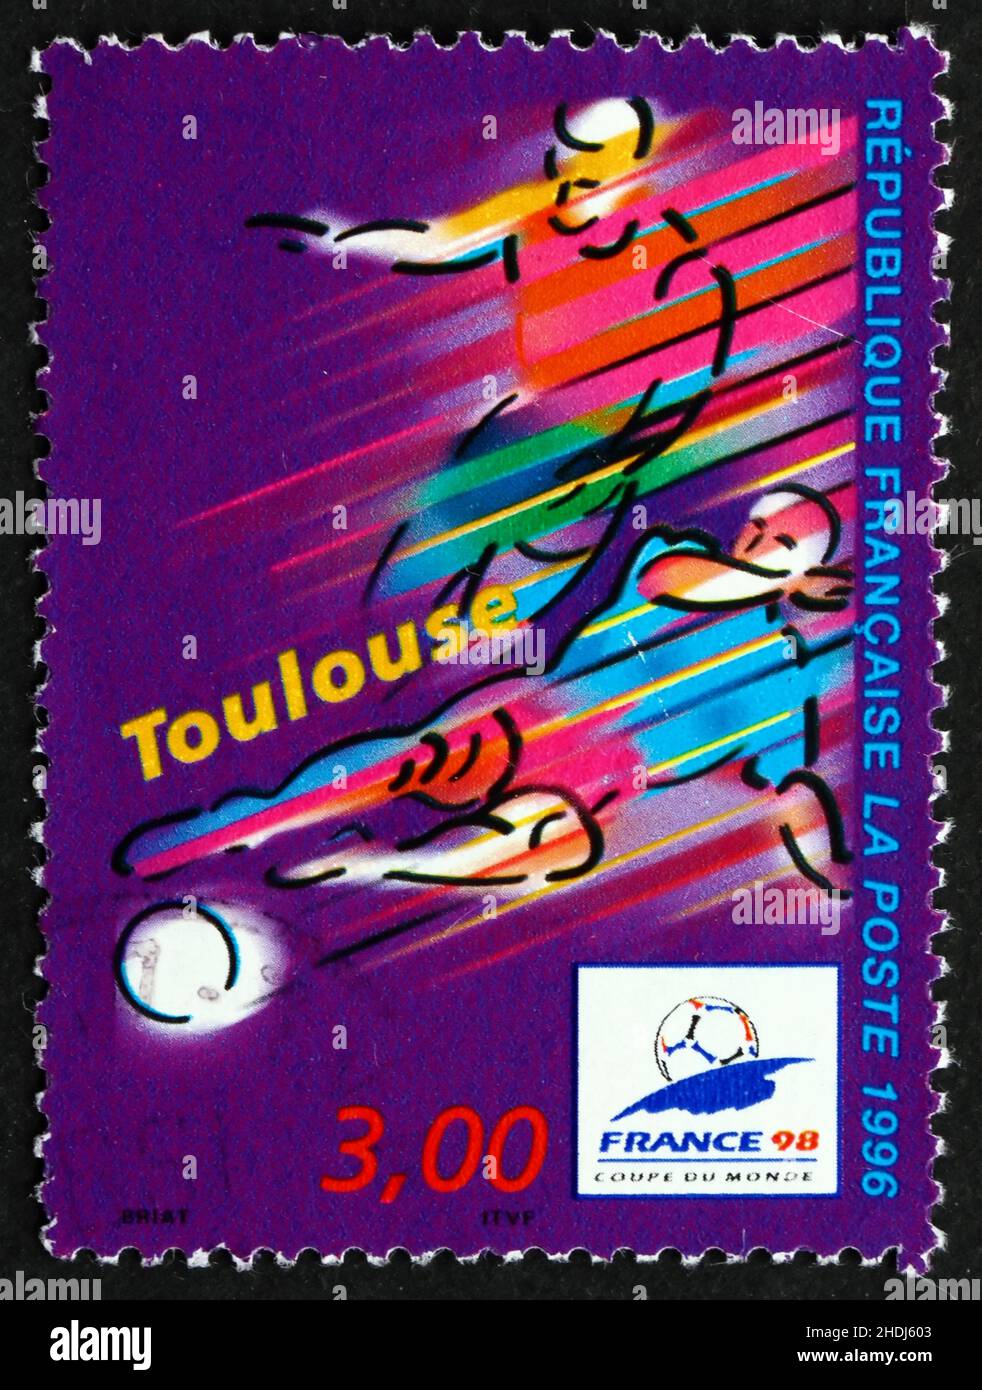 FRANKREICH - UM 1996: Eine in Frankreich gedruckte Marke zeigt Toulouse, Austragungsort der Fußball-WM 1996, stilisierte Action-Szene, um 1996 Stockfoto